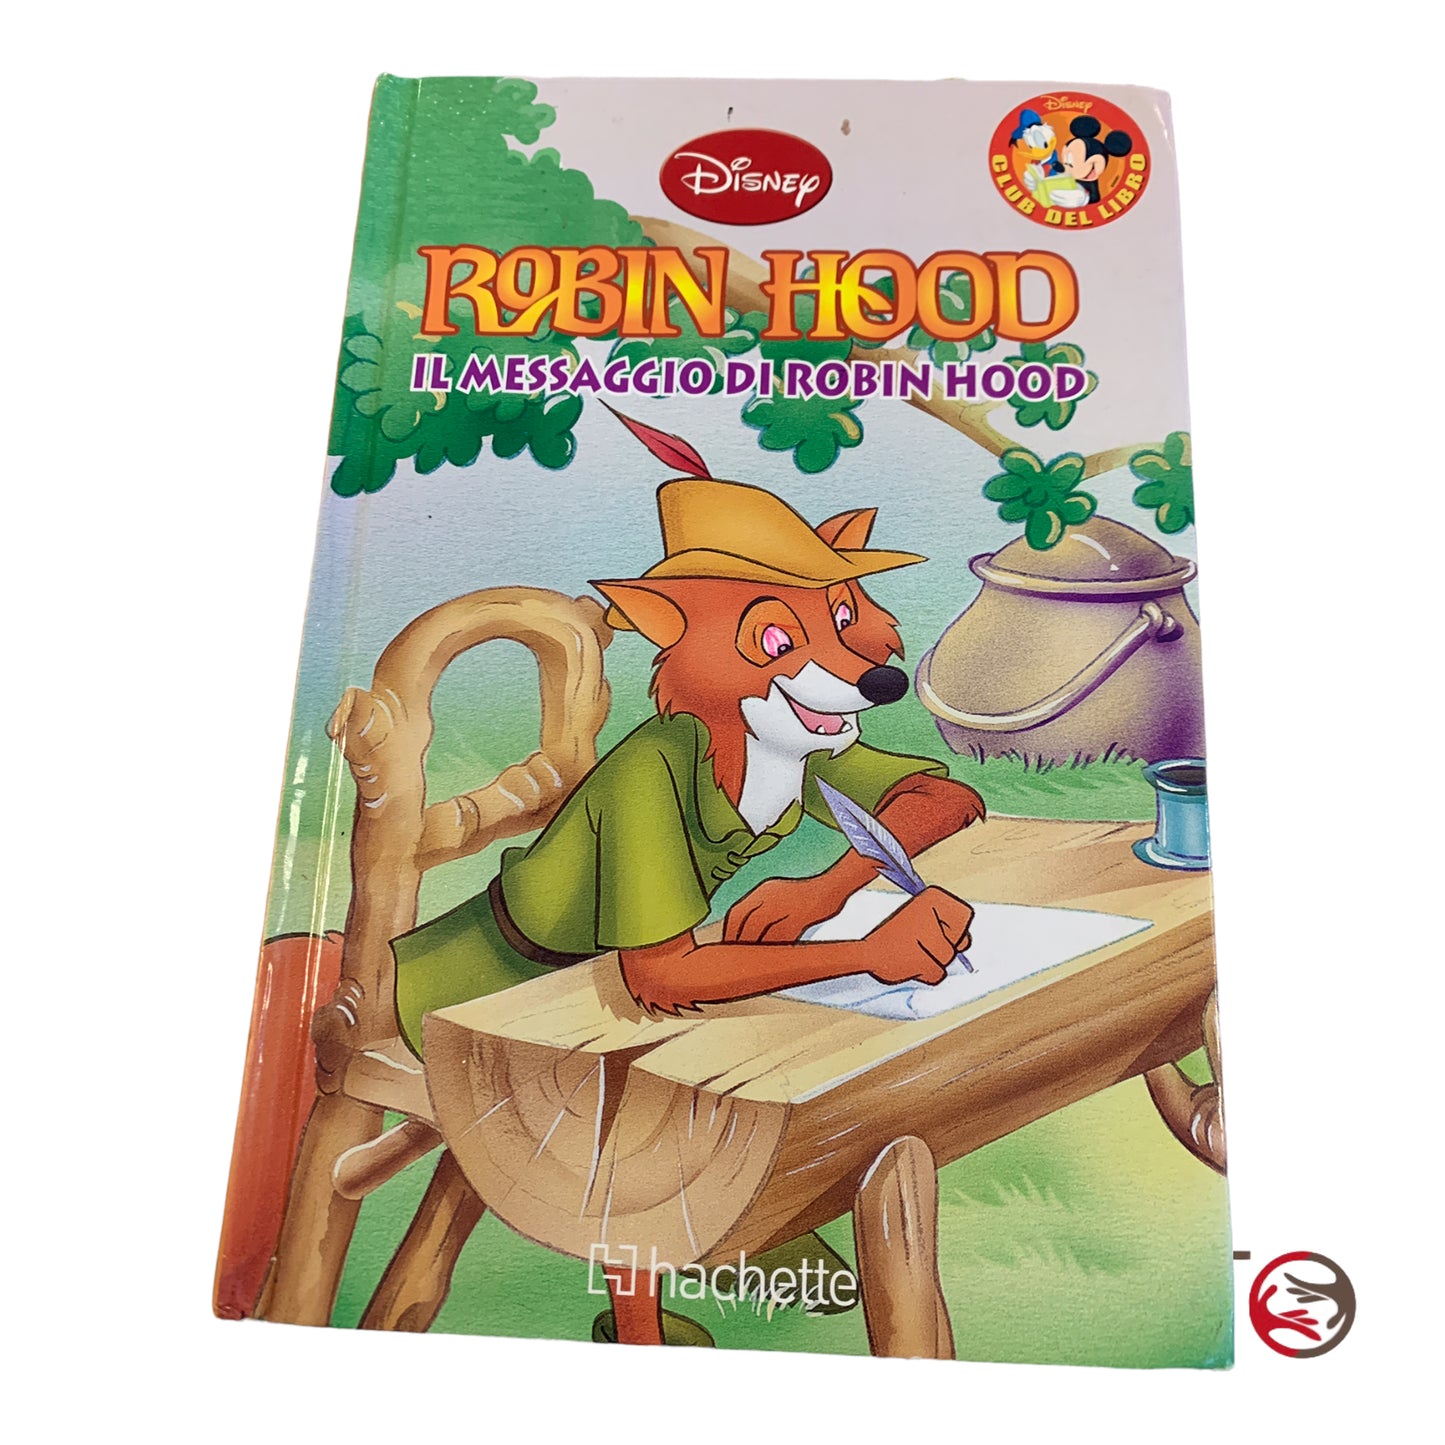 Robin Hoods Botschaft – Disney Hachette